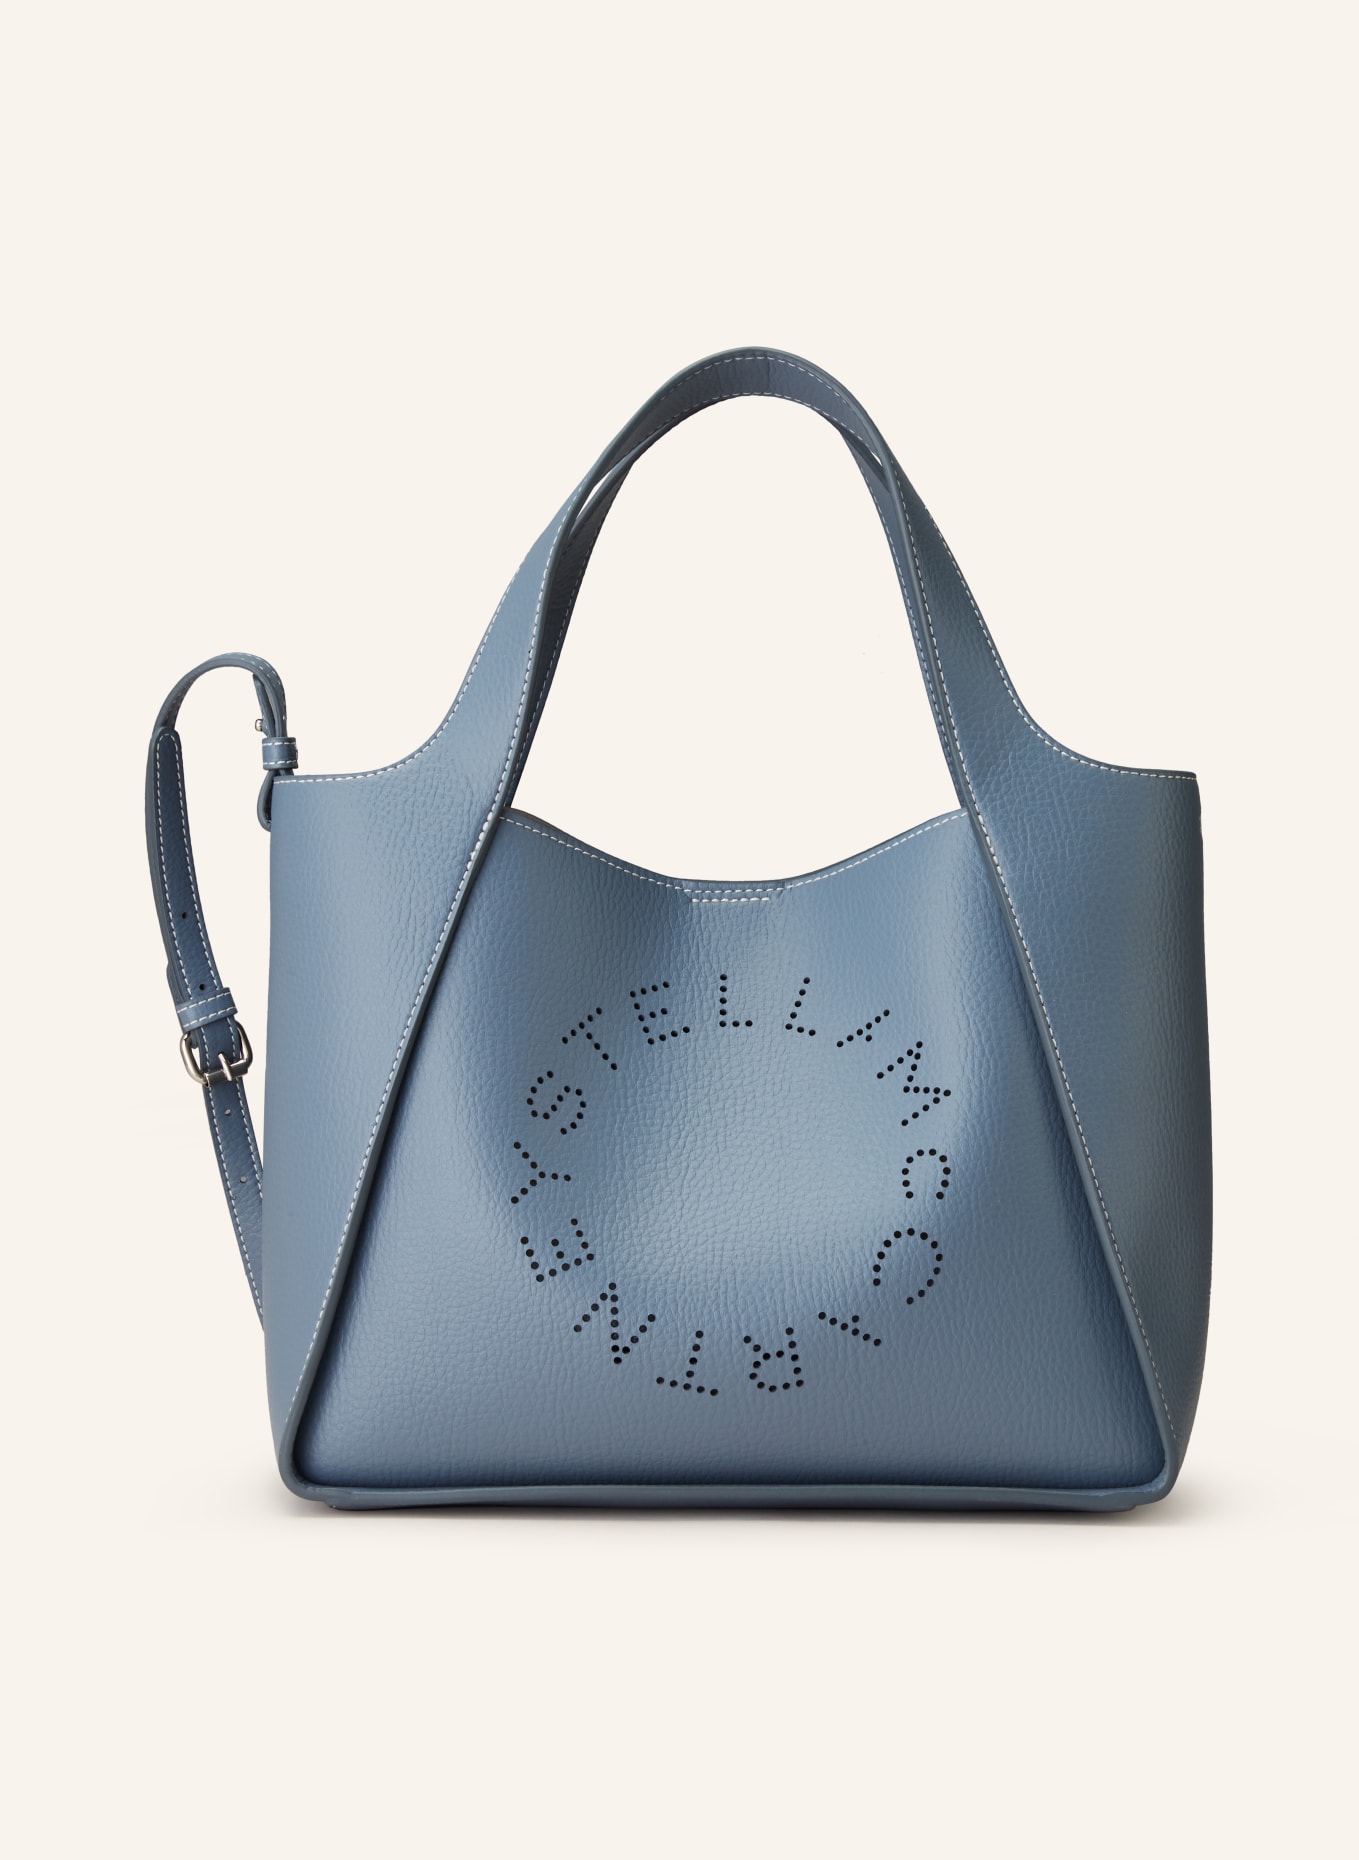 STELLA McCARTNEY Handtasche mit Pouch, Farbe: BLAUGRAU (Bild 1)